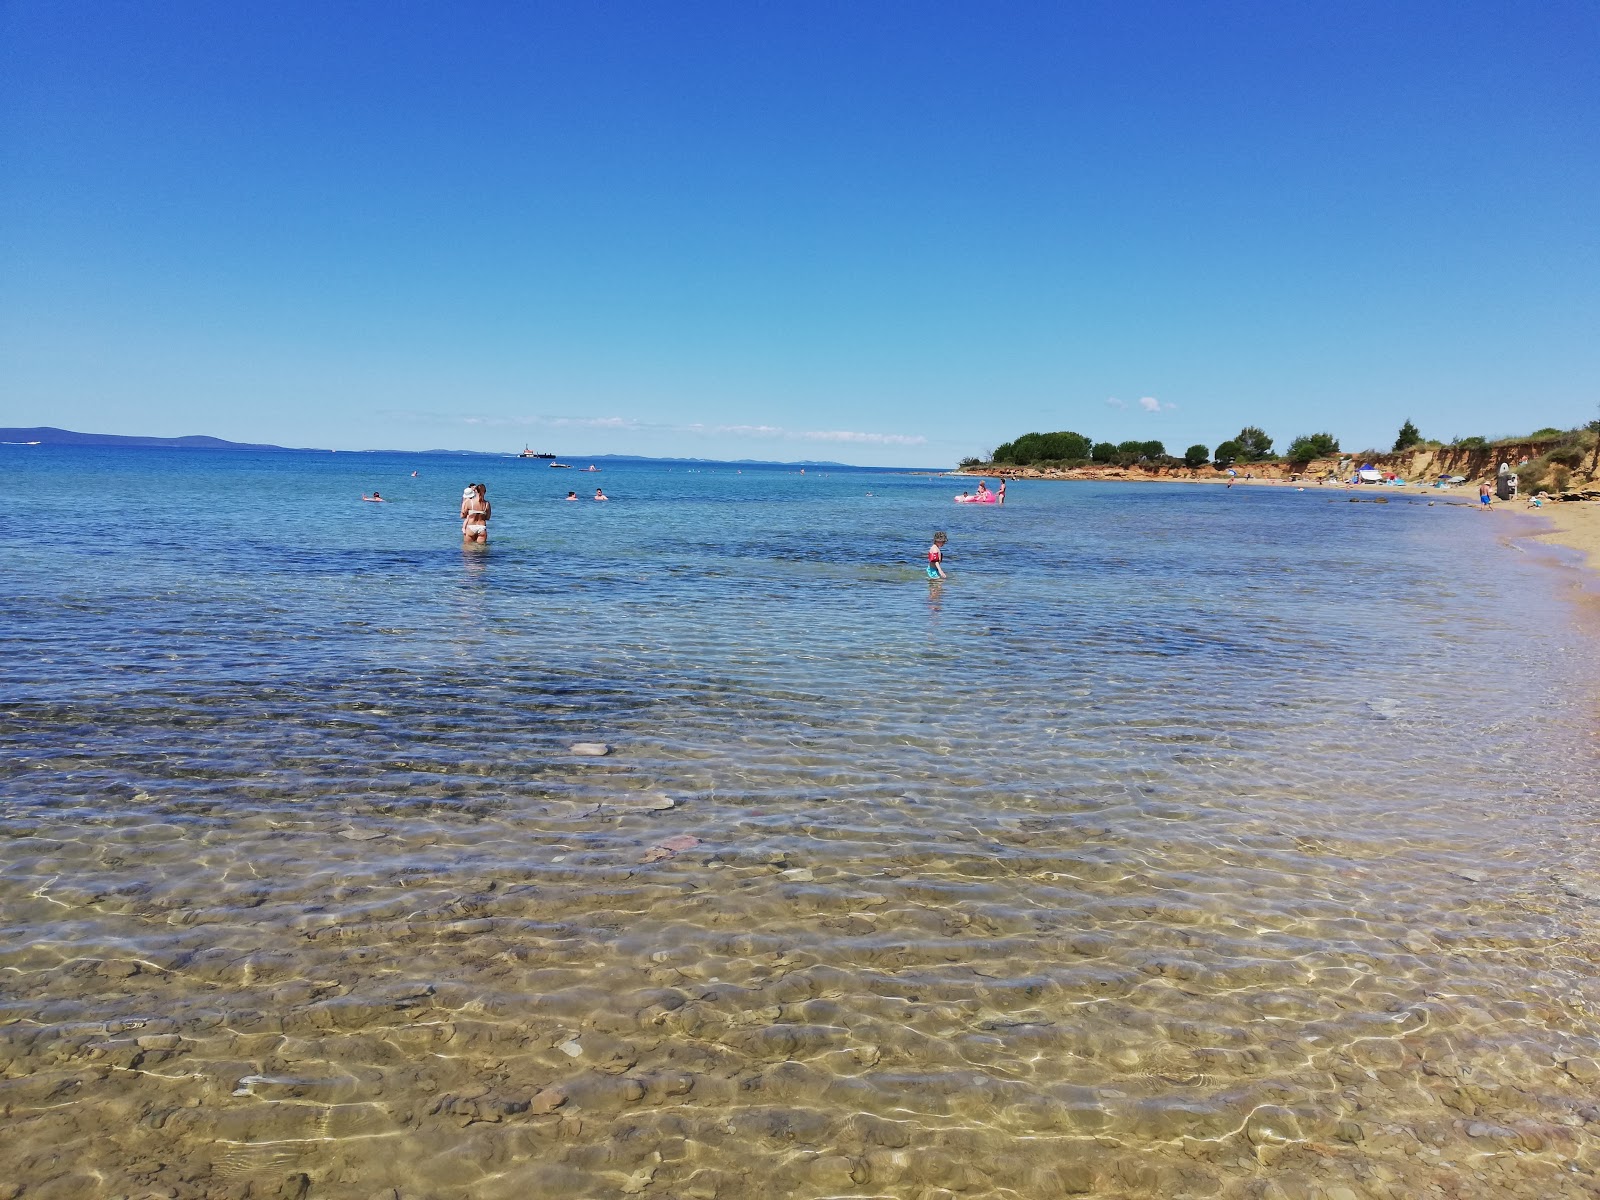 Zdjęcie Bilotinjak beach - popularne miejsce wśród znawców relaksu